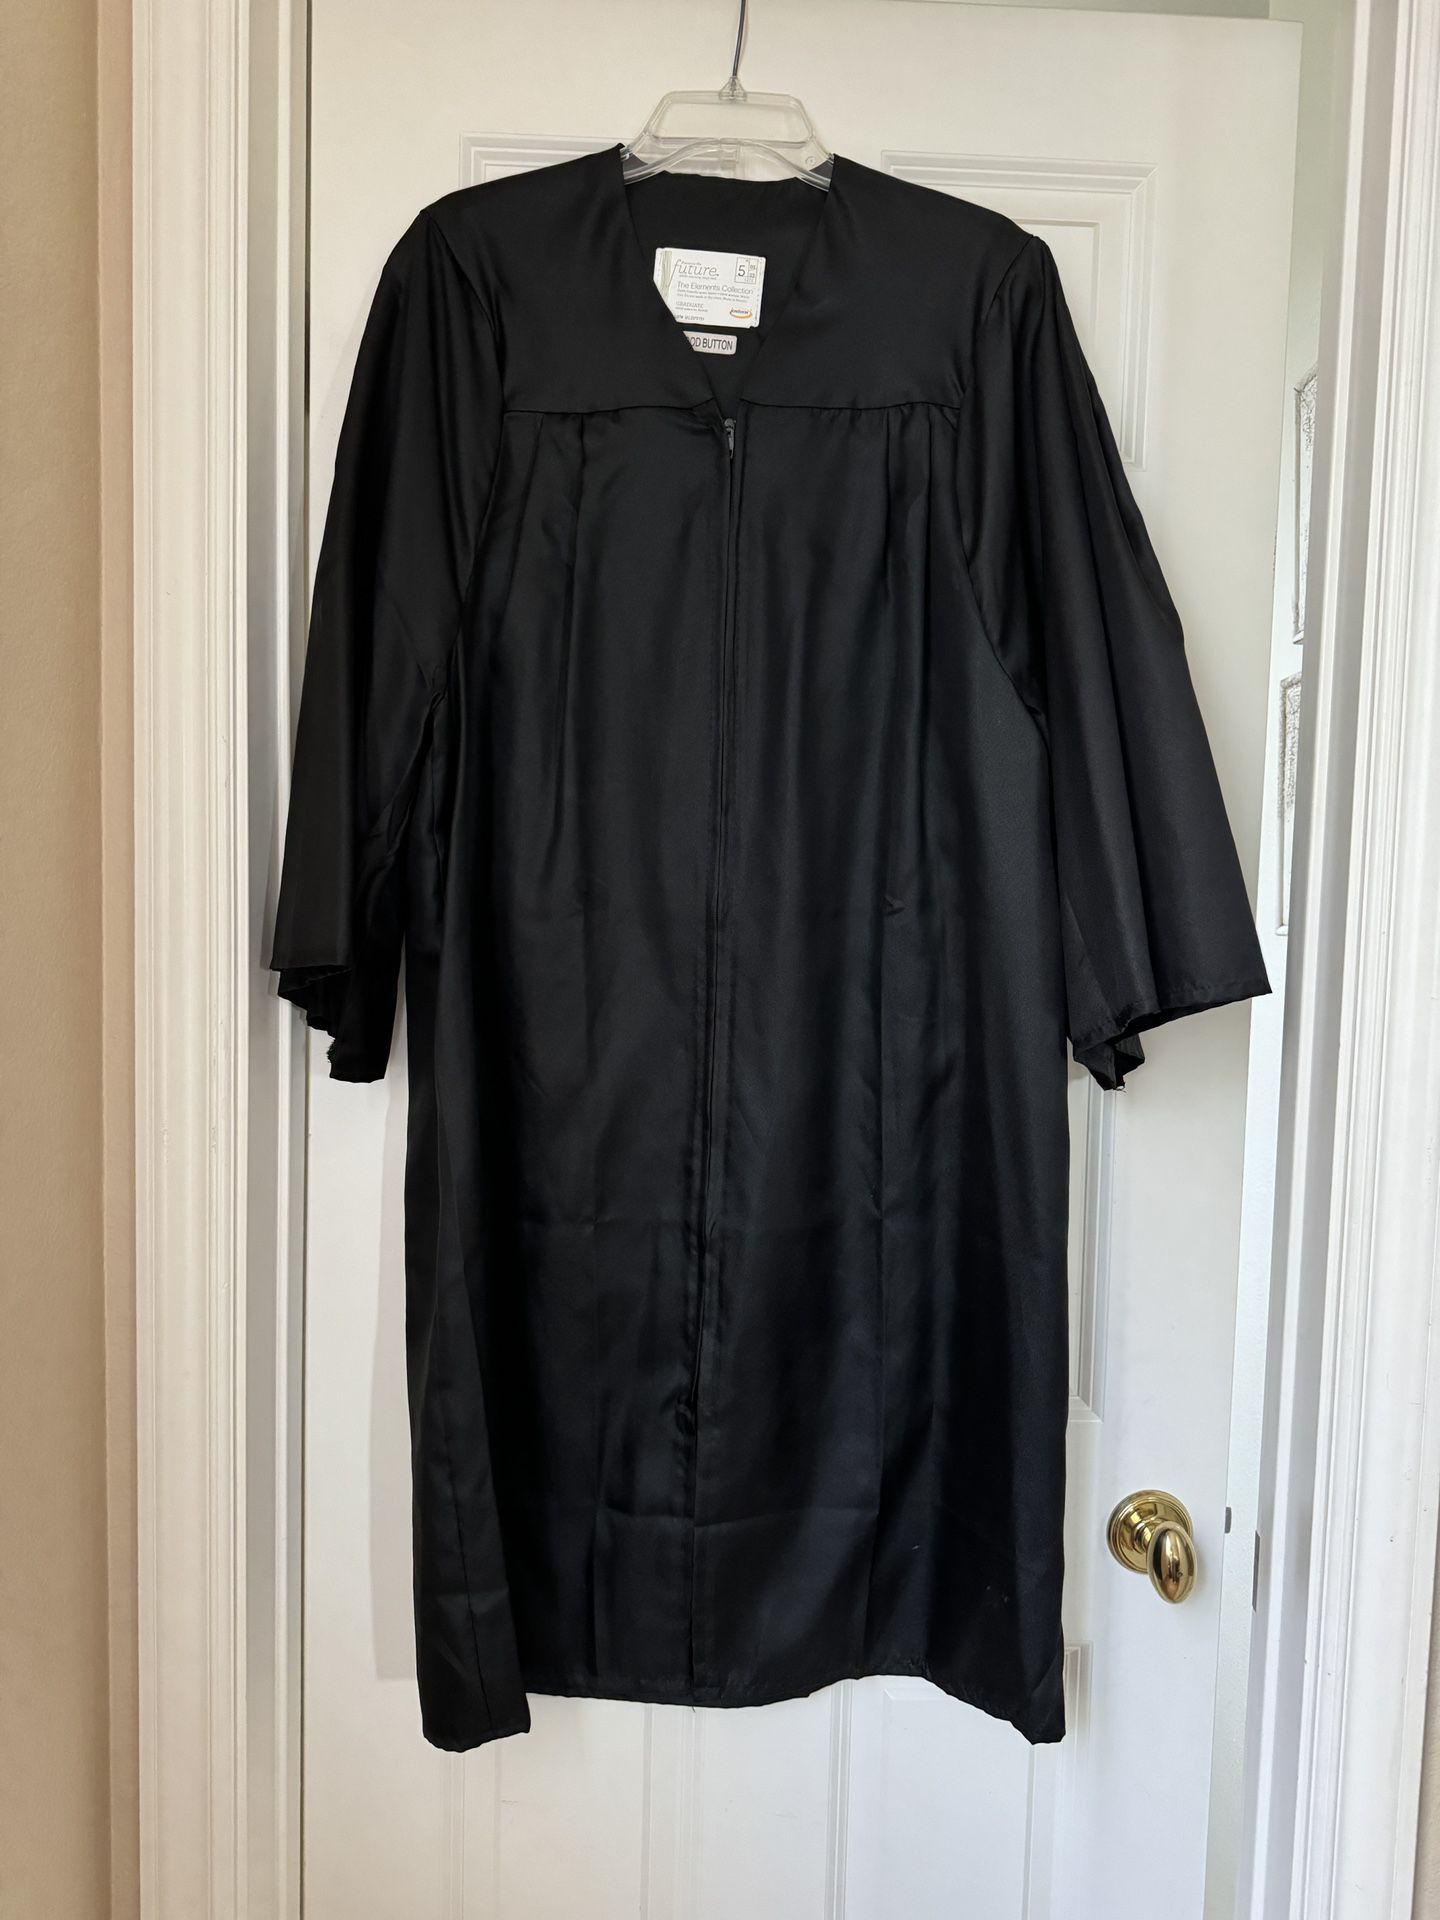 Graduation Gown - Black Size 5’1” - 5’3”